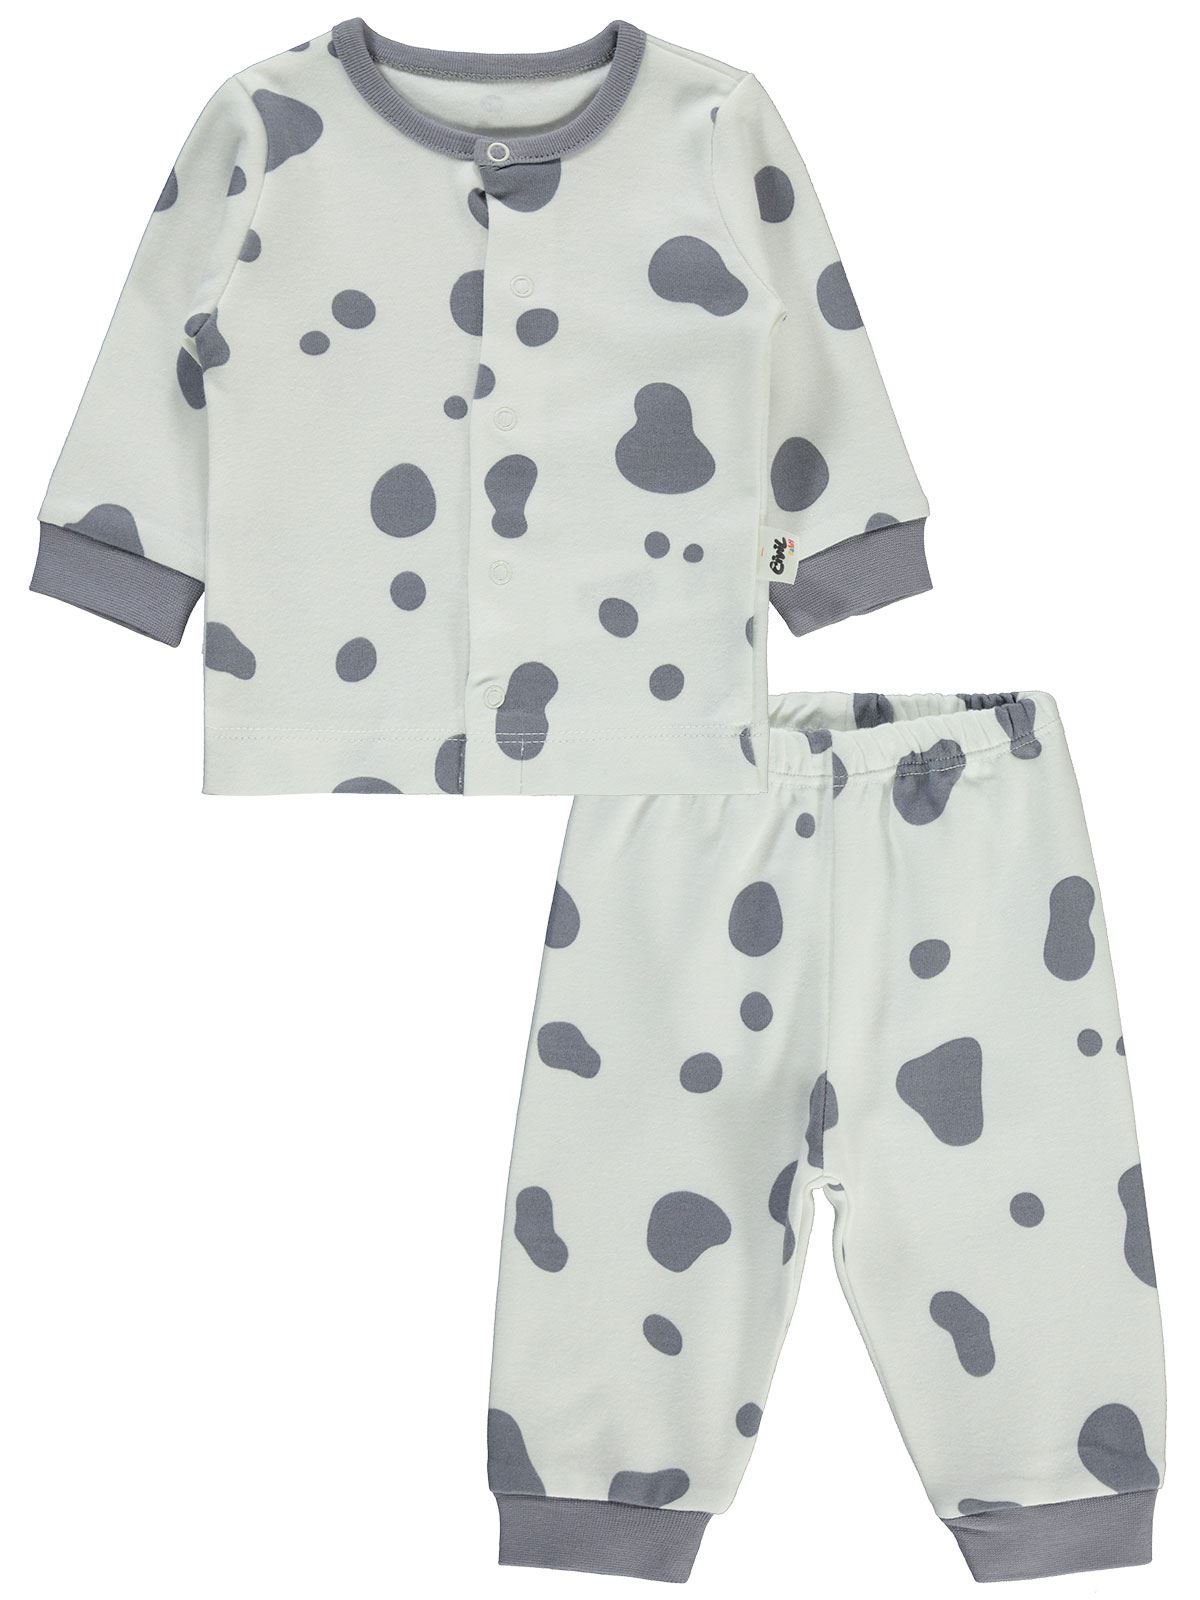 Civil Baby Bebek Pijama Takımı 1-3 Ay Gri